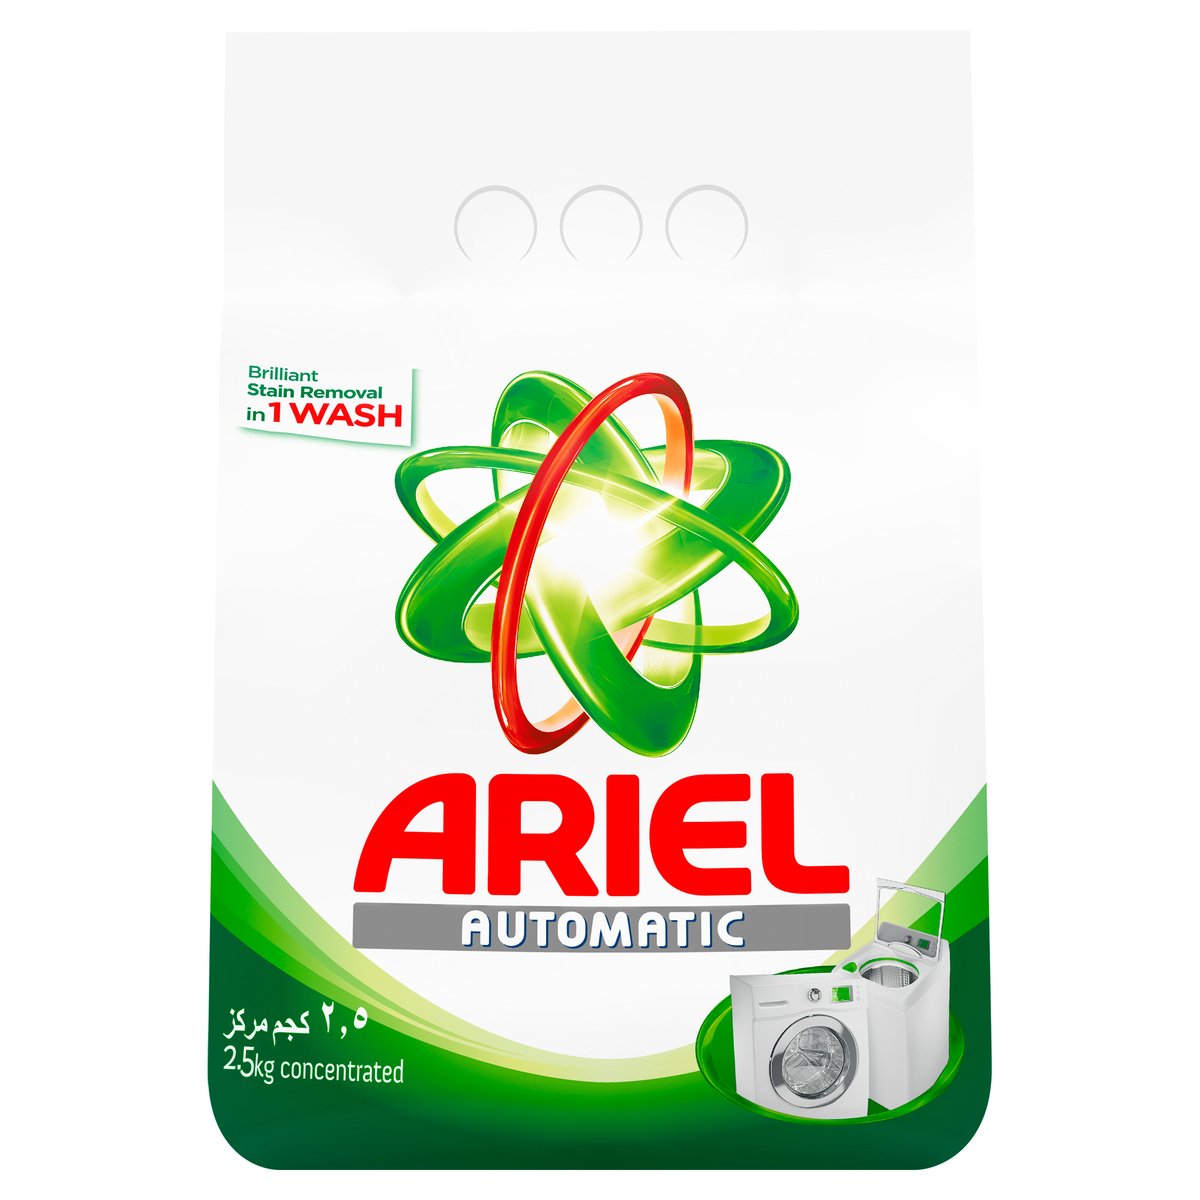 Ariel Automatic Washing Powder 2.5kg